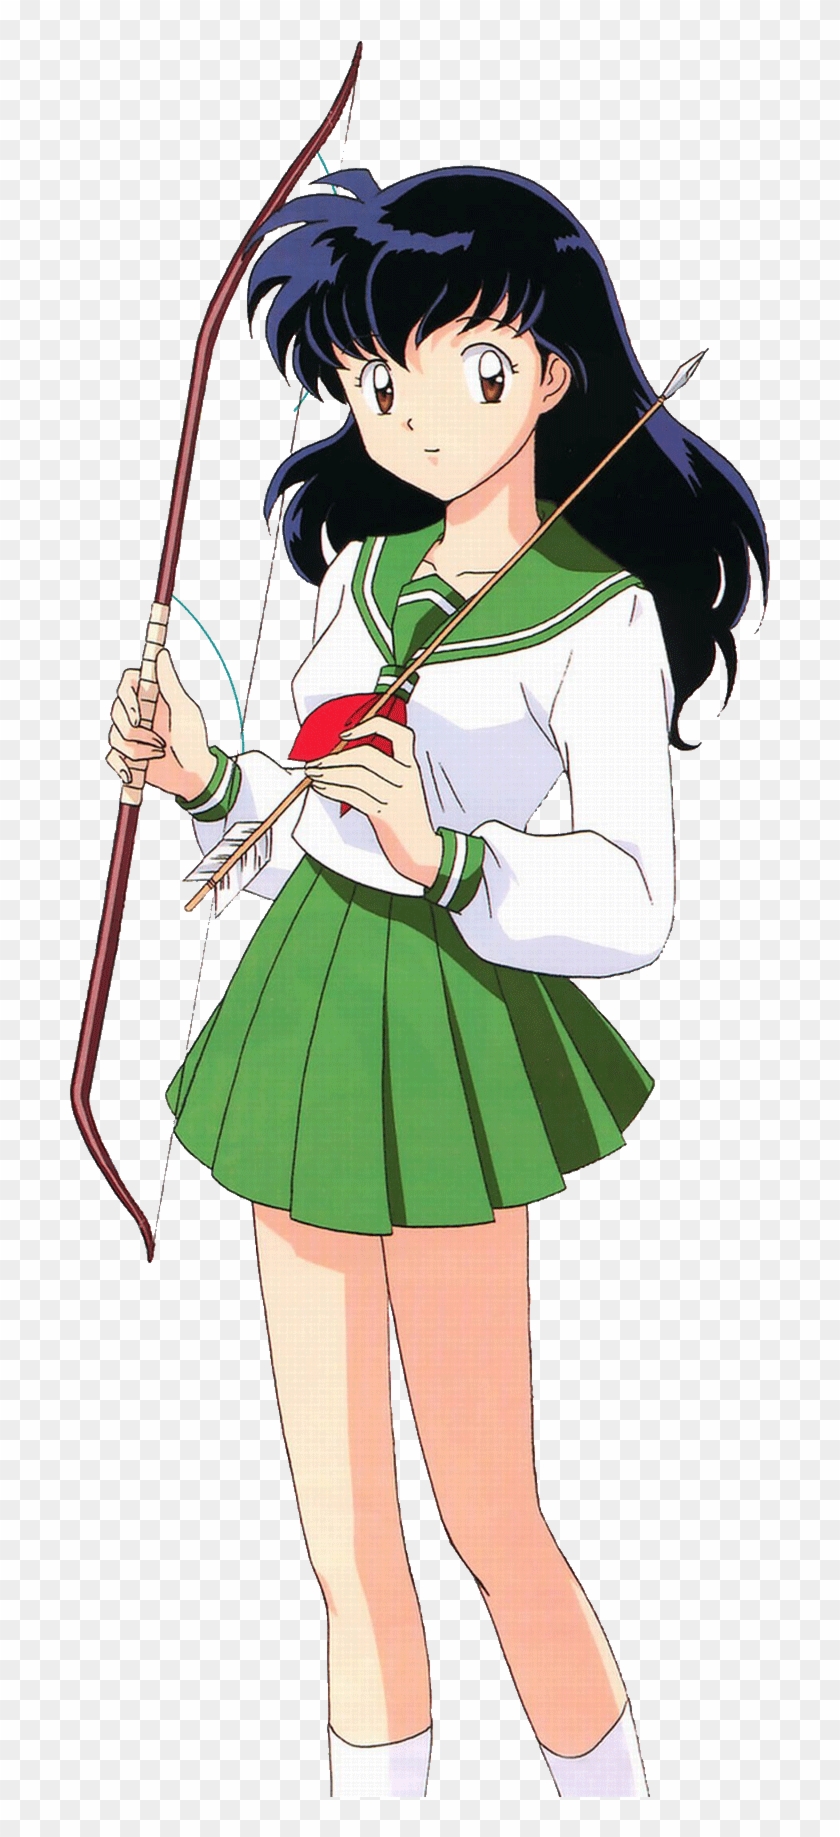 Load 101 More Imagesgrid View - Anime School Uniform Sailor Clipart